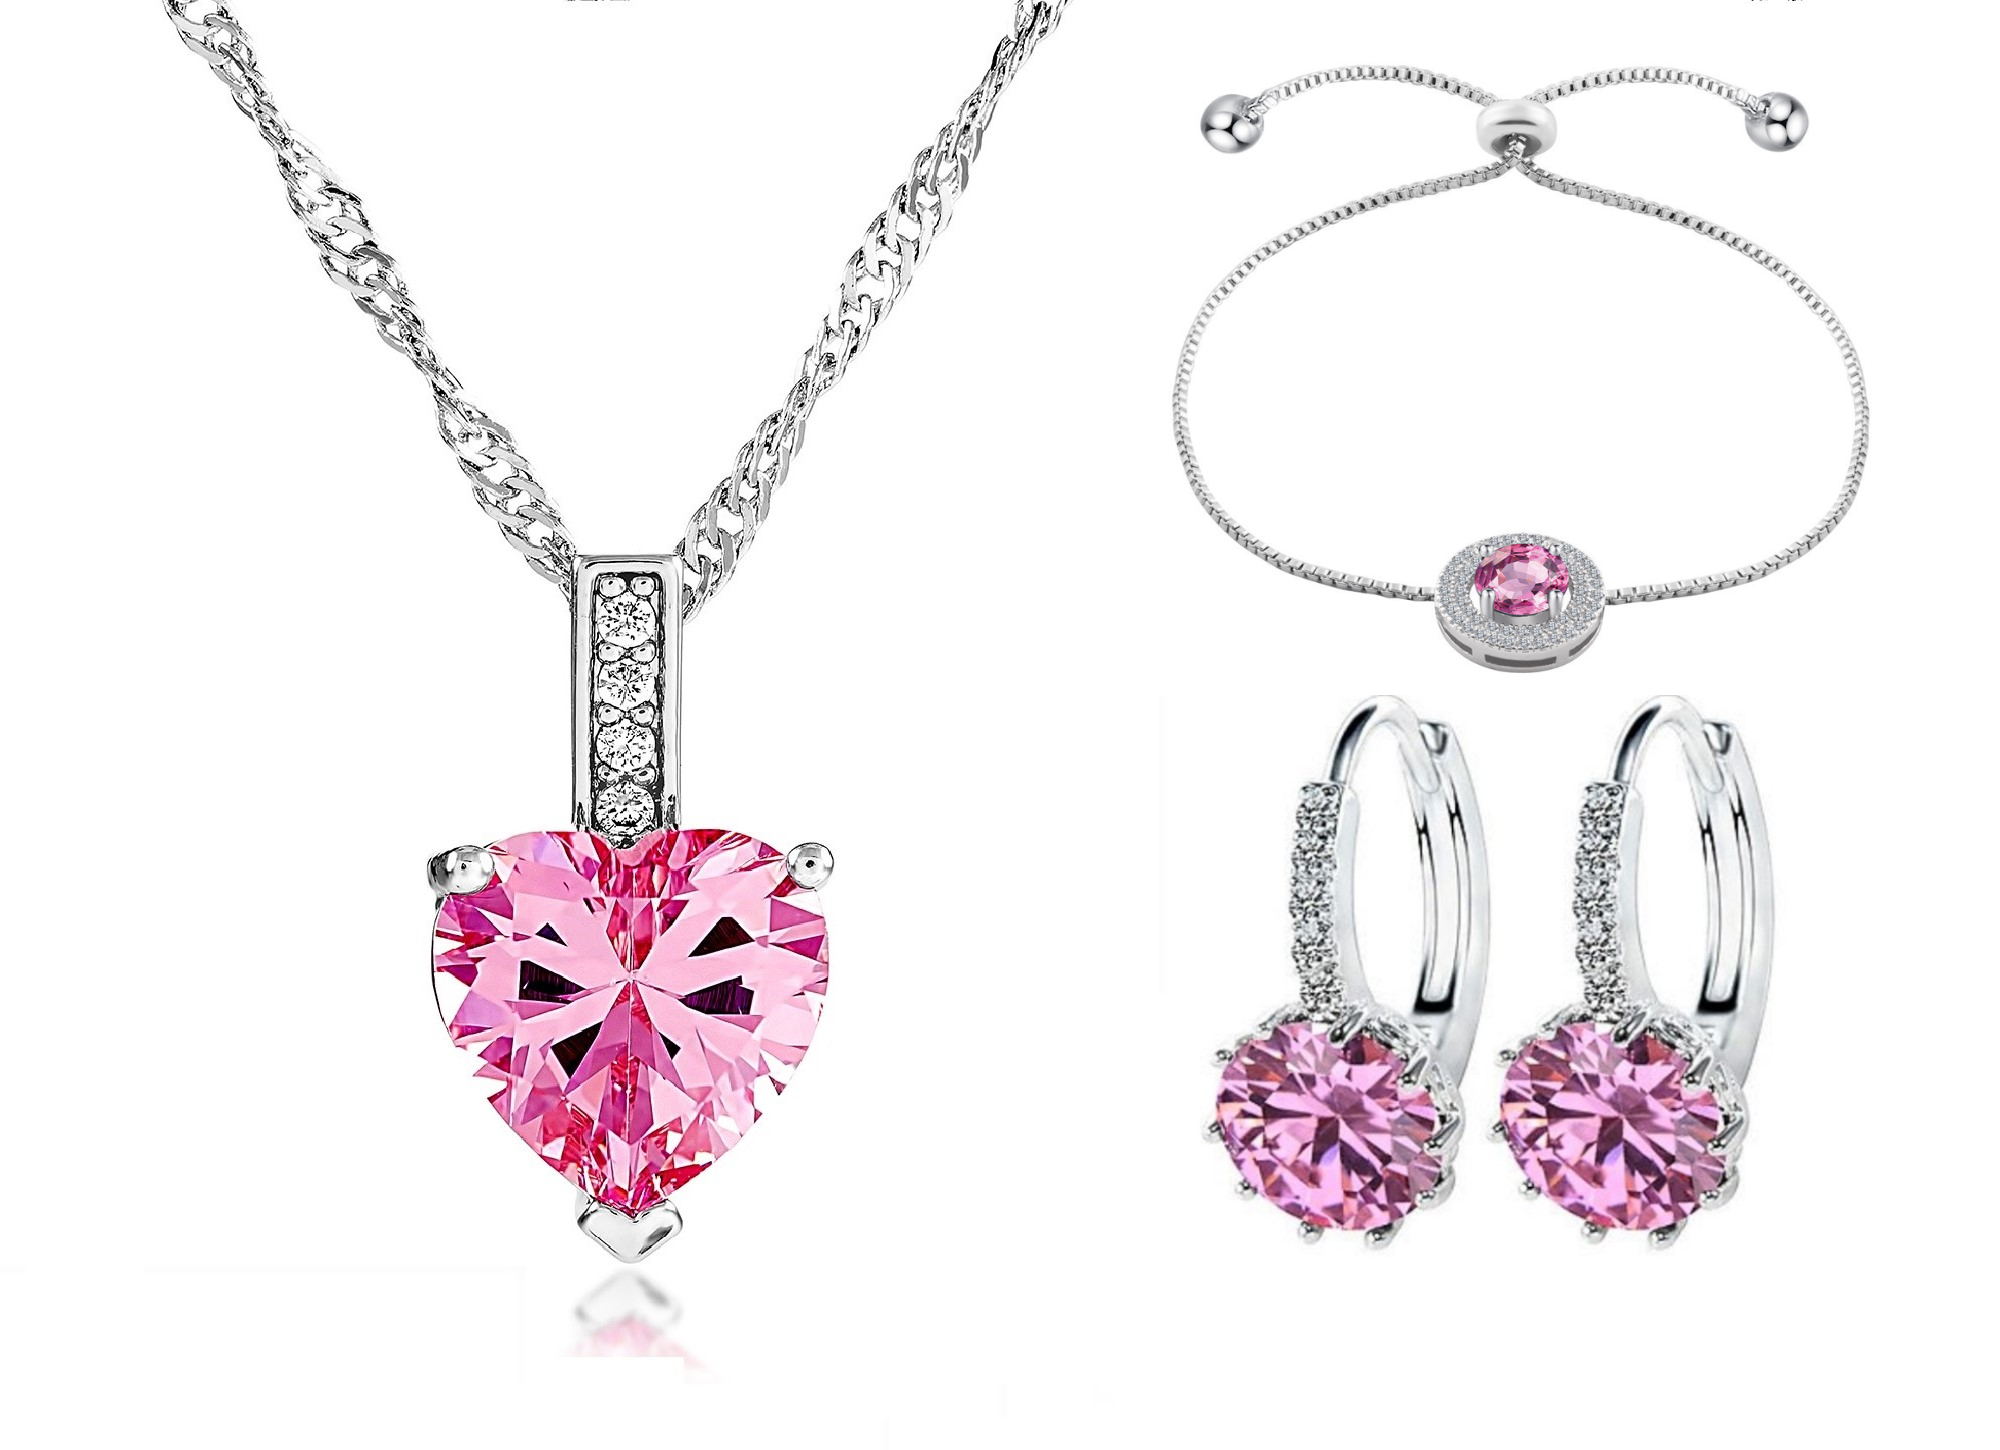 30 pcs - Crystal Pink Sapphire Pendant Necklace Bracelet and Earrings Tri-Set - 10 Sets|GCJ005GCJ024GCJ525-Pink Tri-Set|UK SELLER